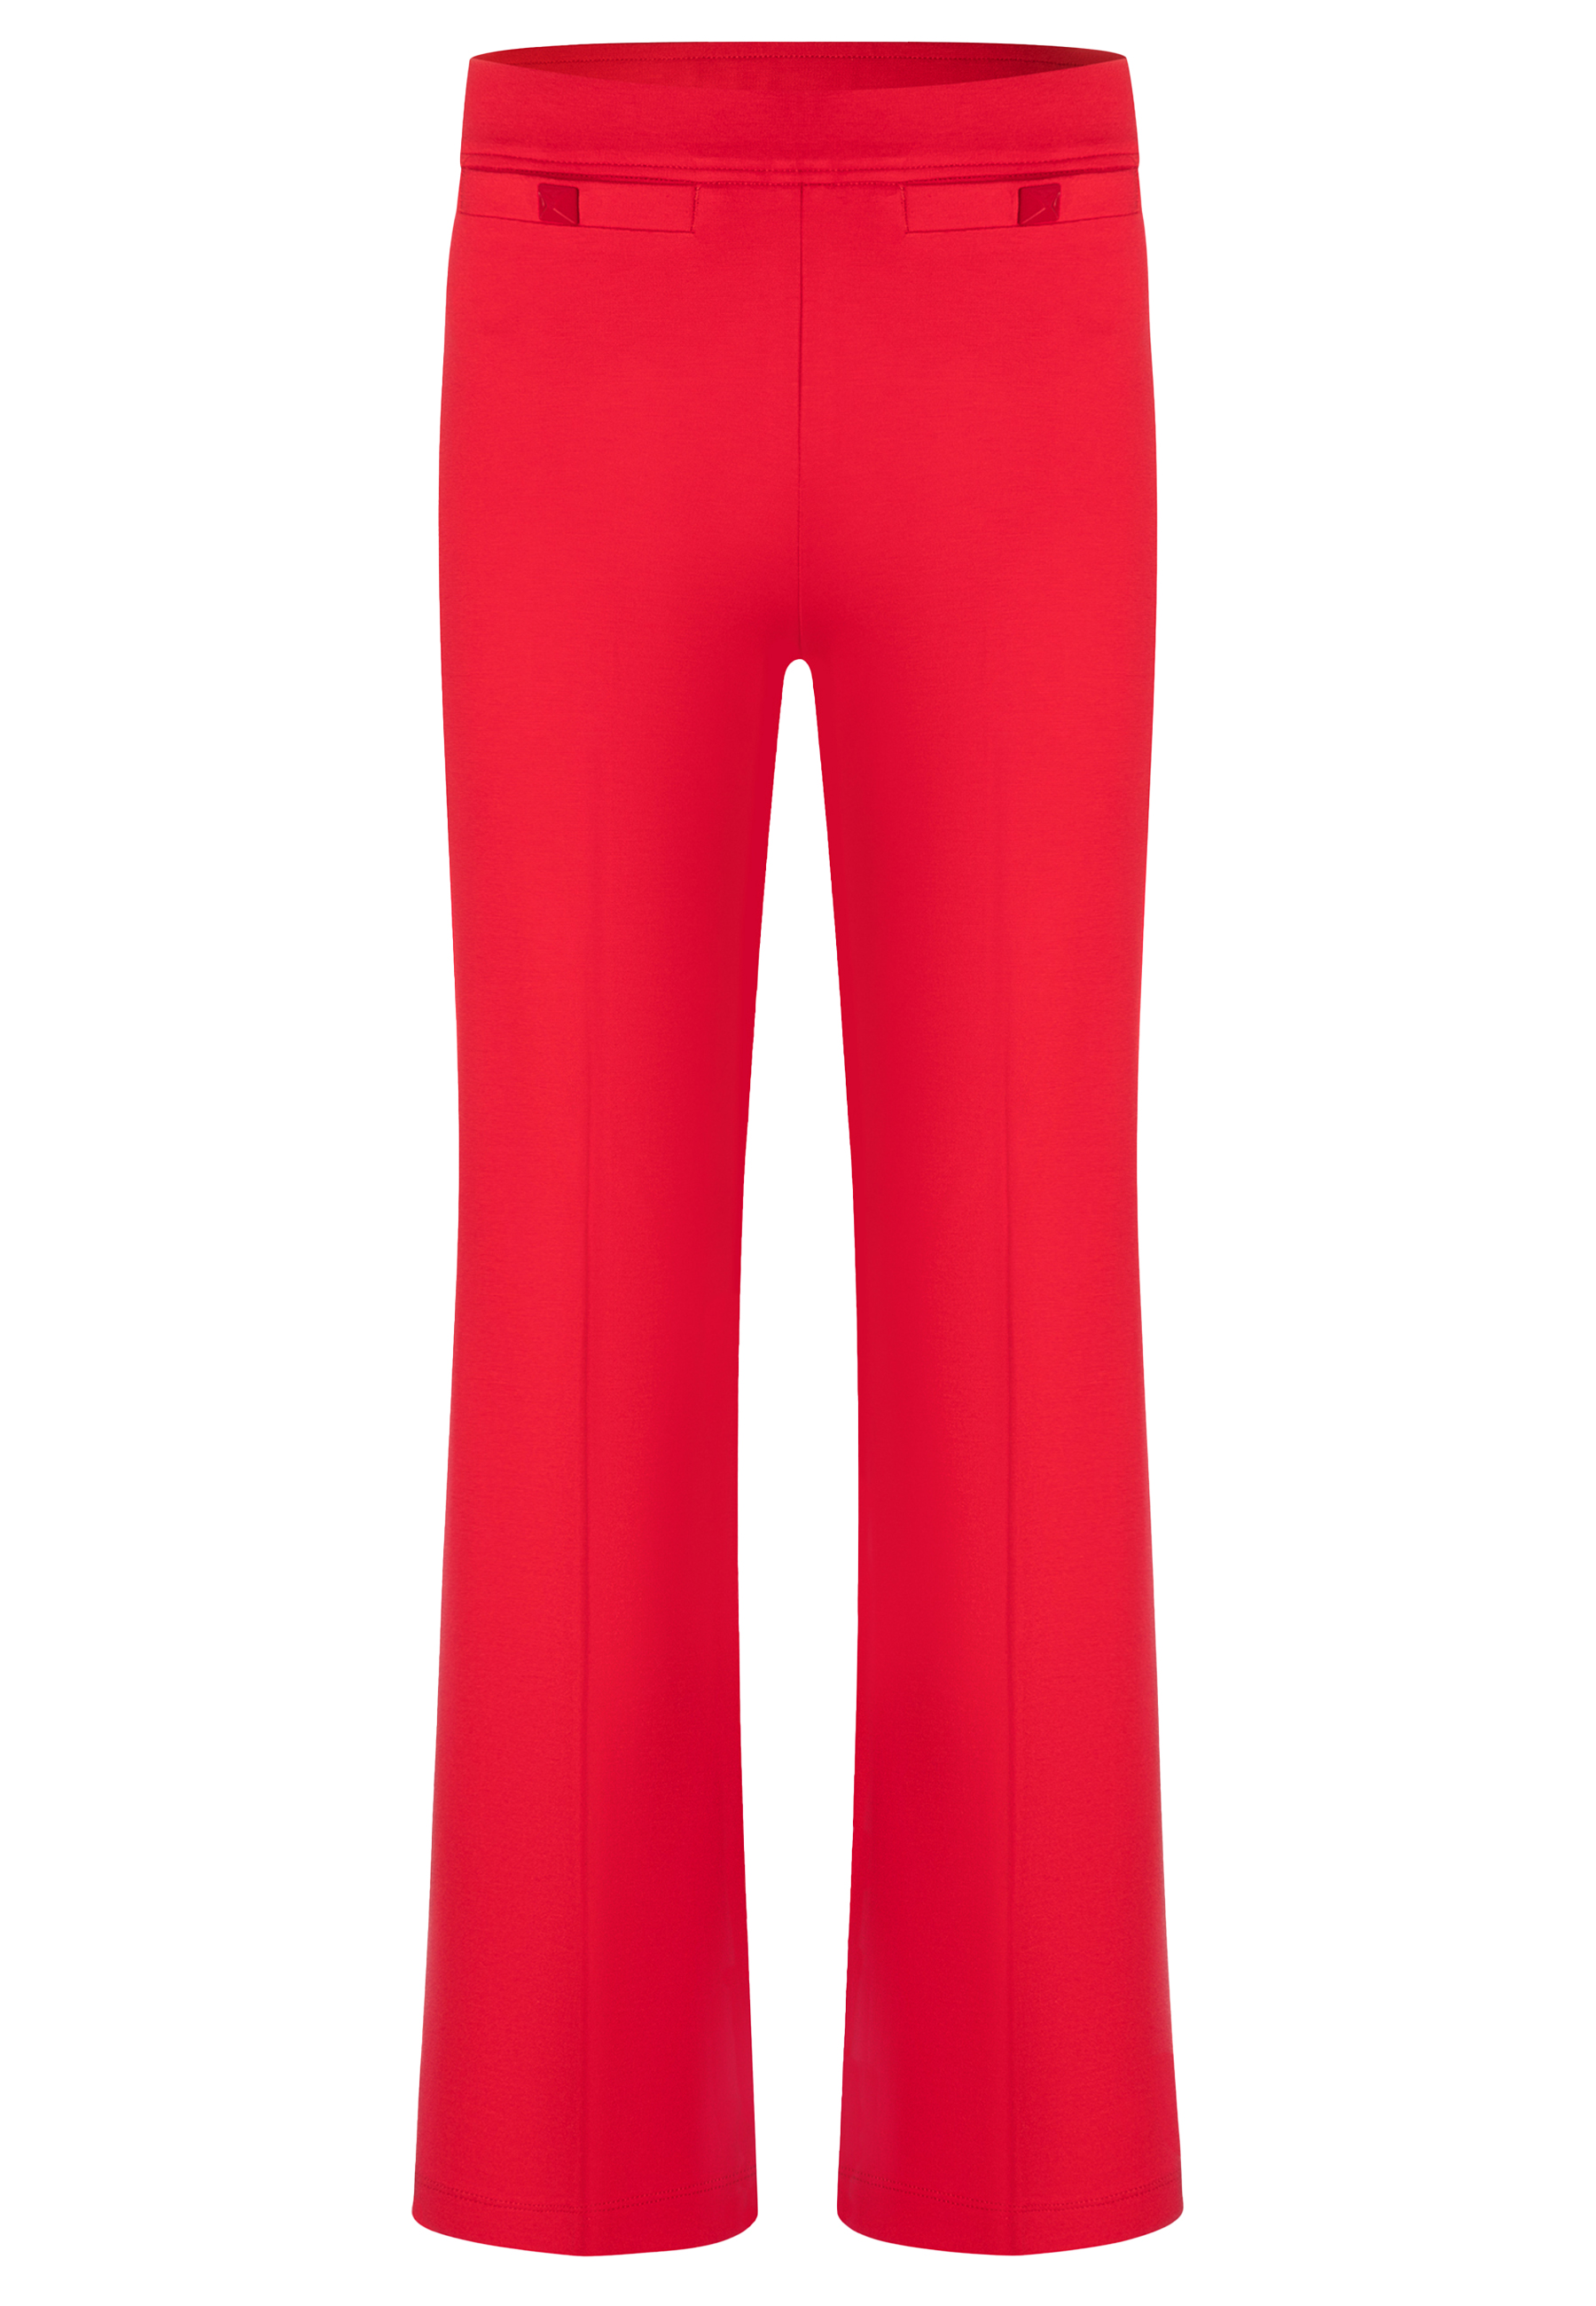 Cambio pantalons rood Dames maat 44